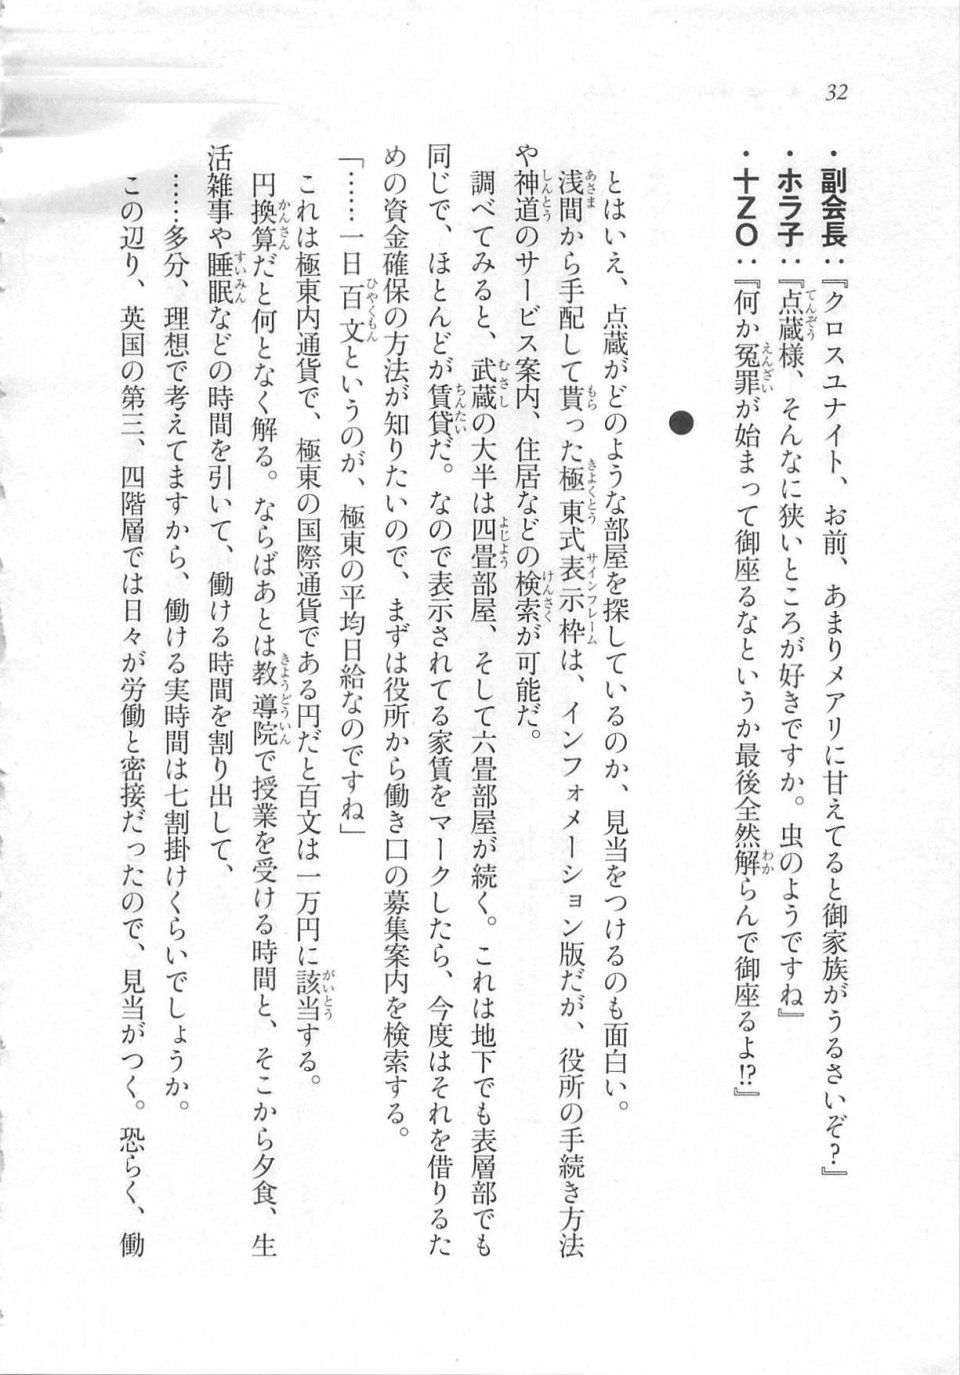 Kyoukai Senjou no Horizon LN Sidestory Vol 3 - Photo #36